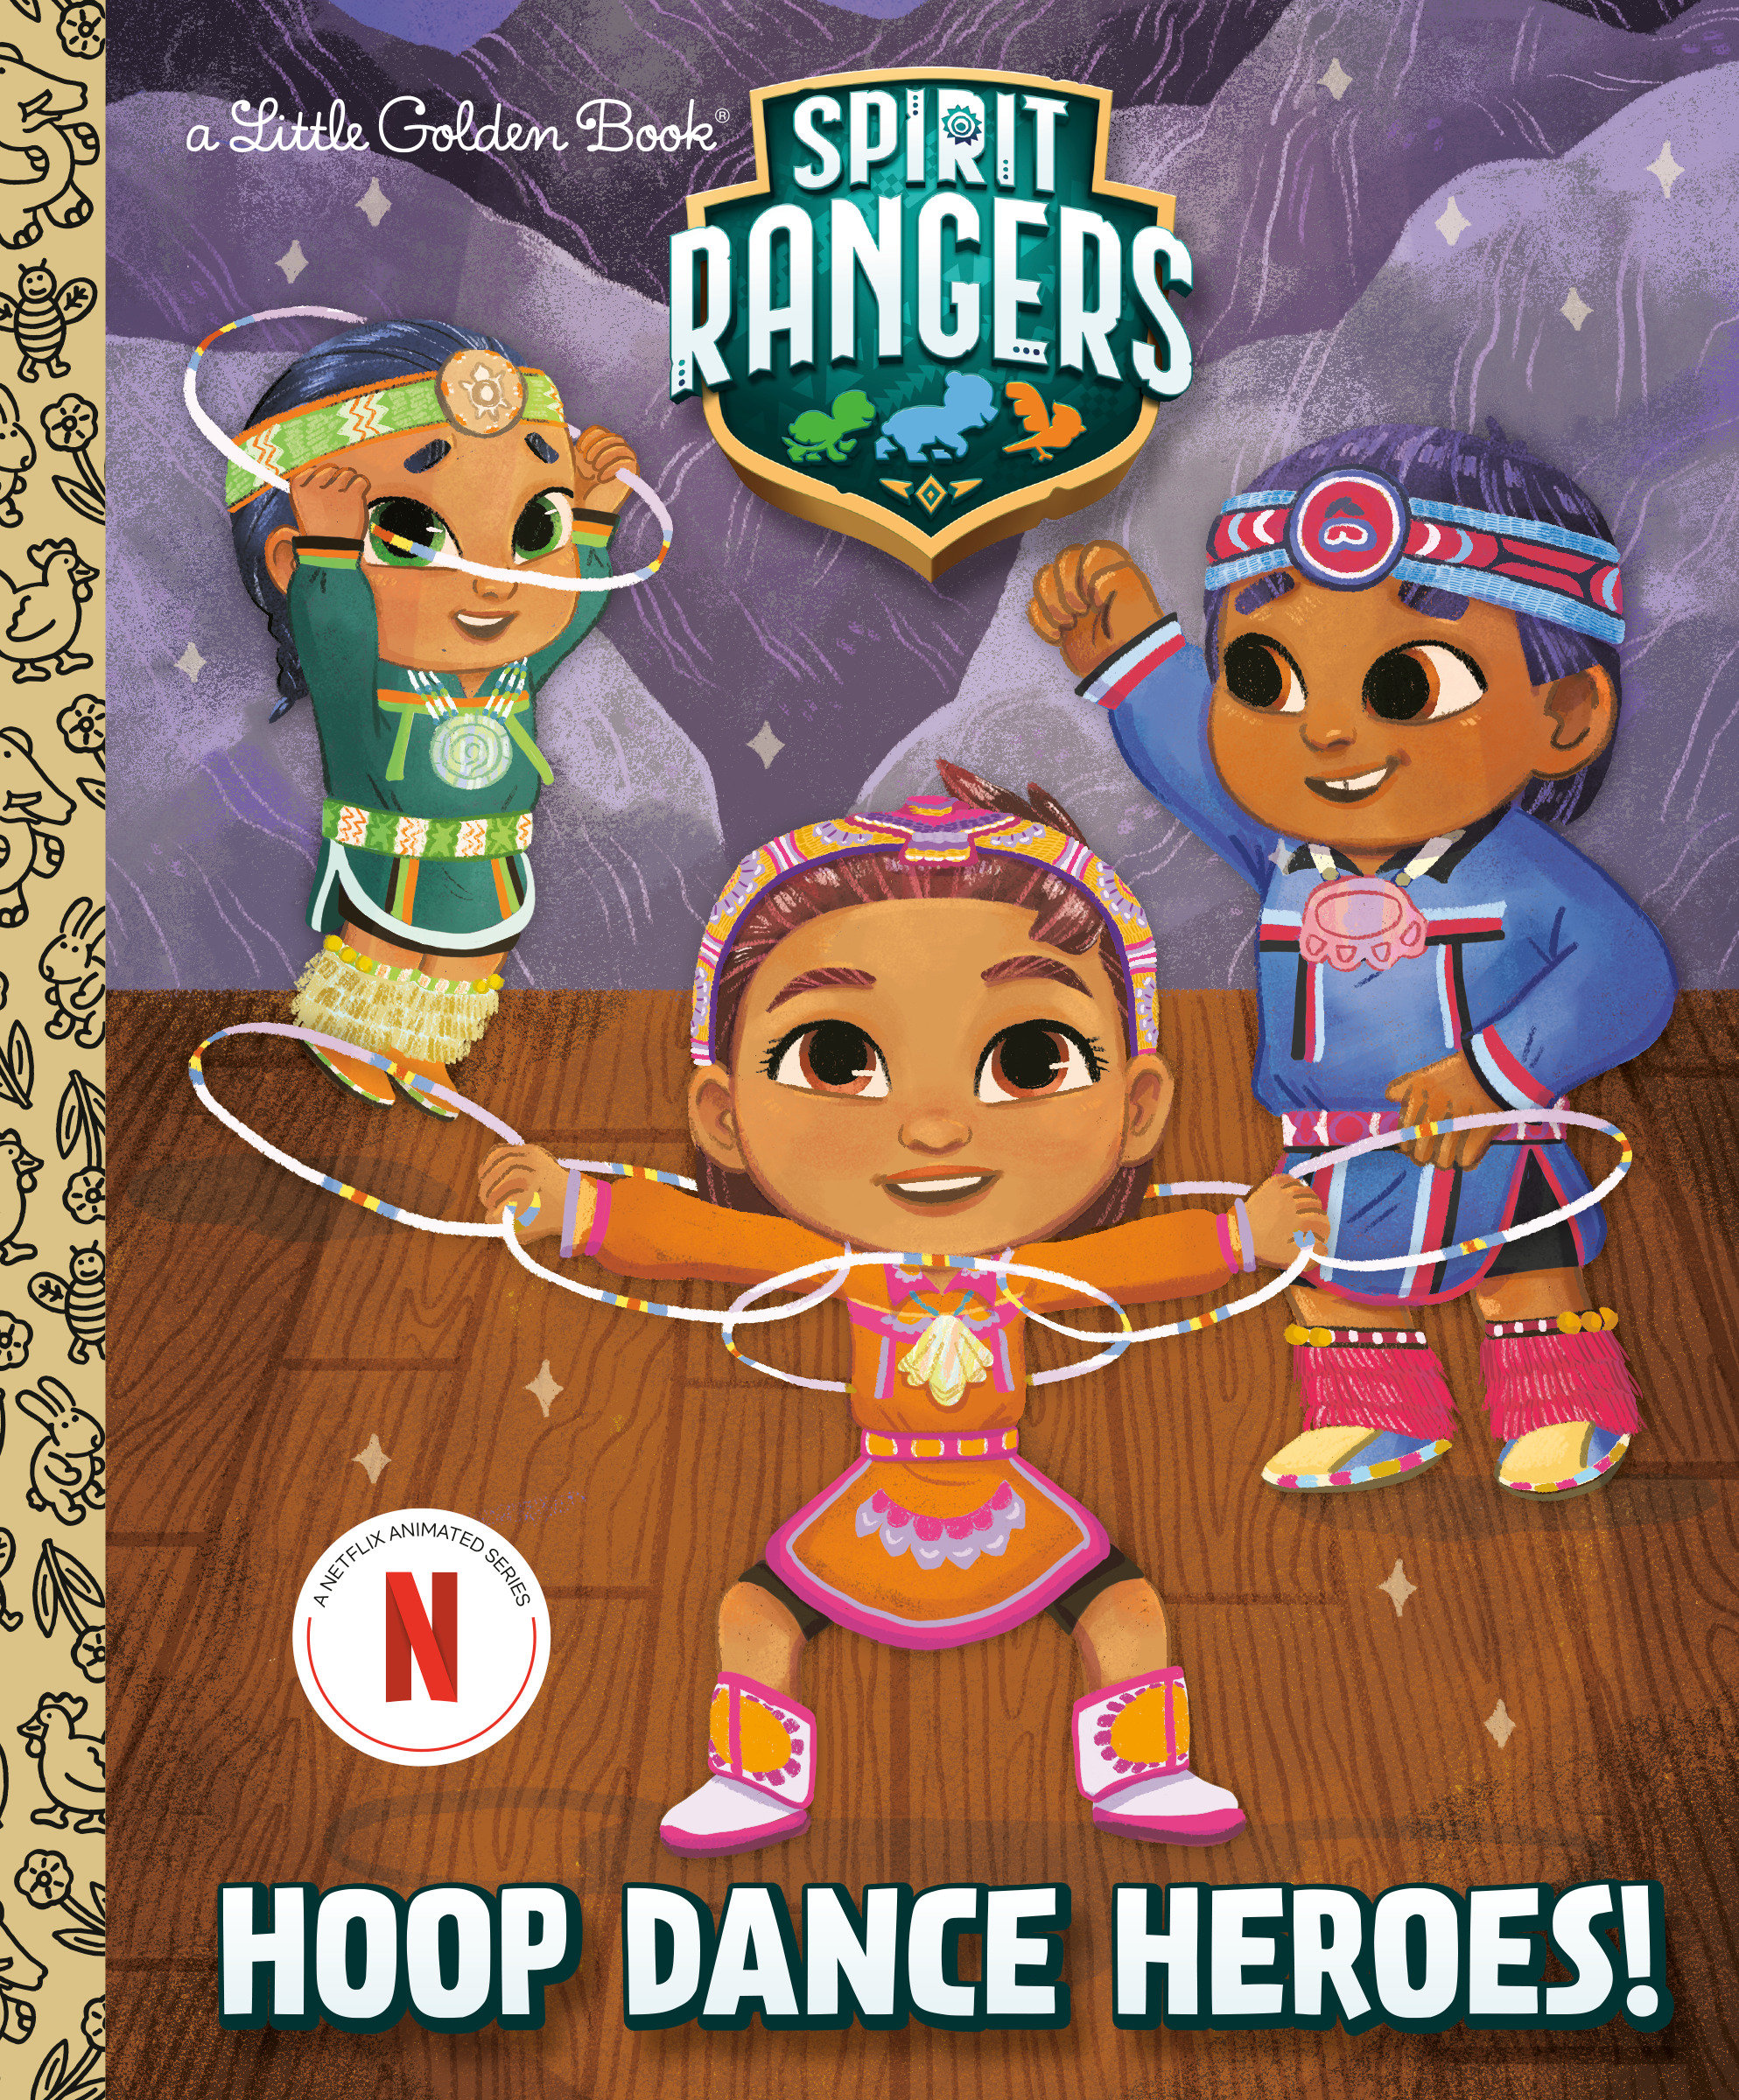 Hoop Dance Heroes! (Spirit Rangers) Little Golden Book